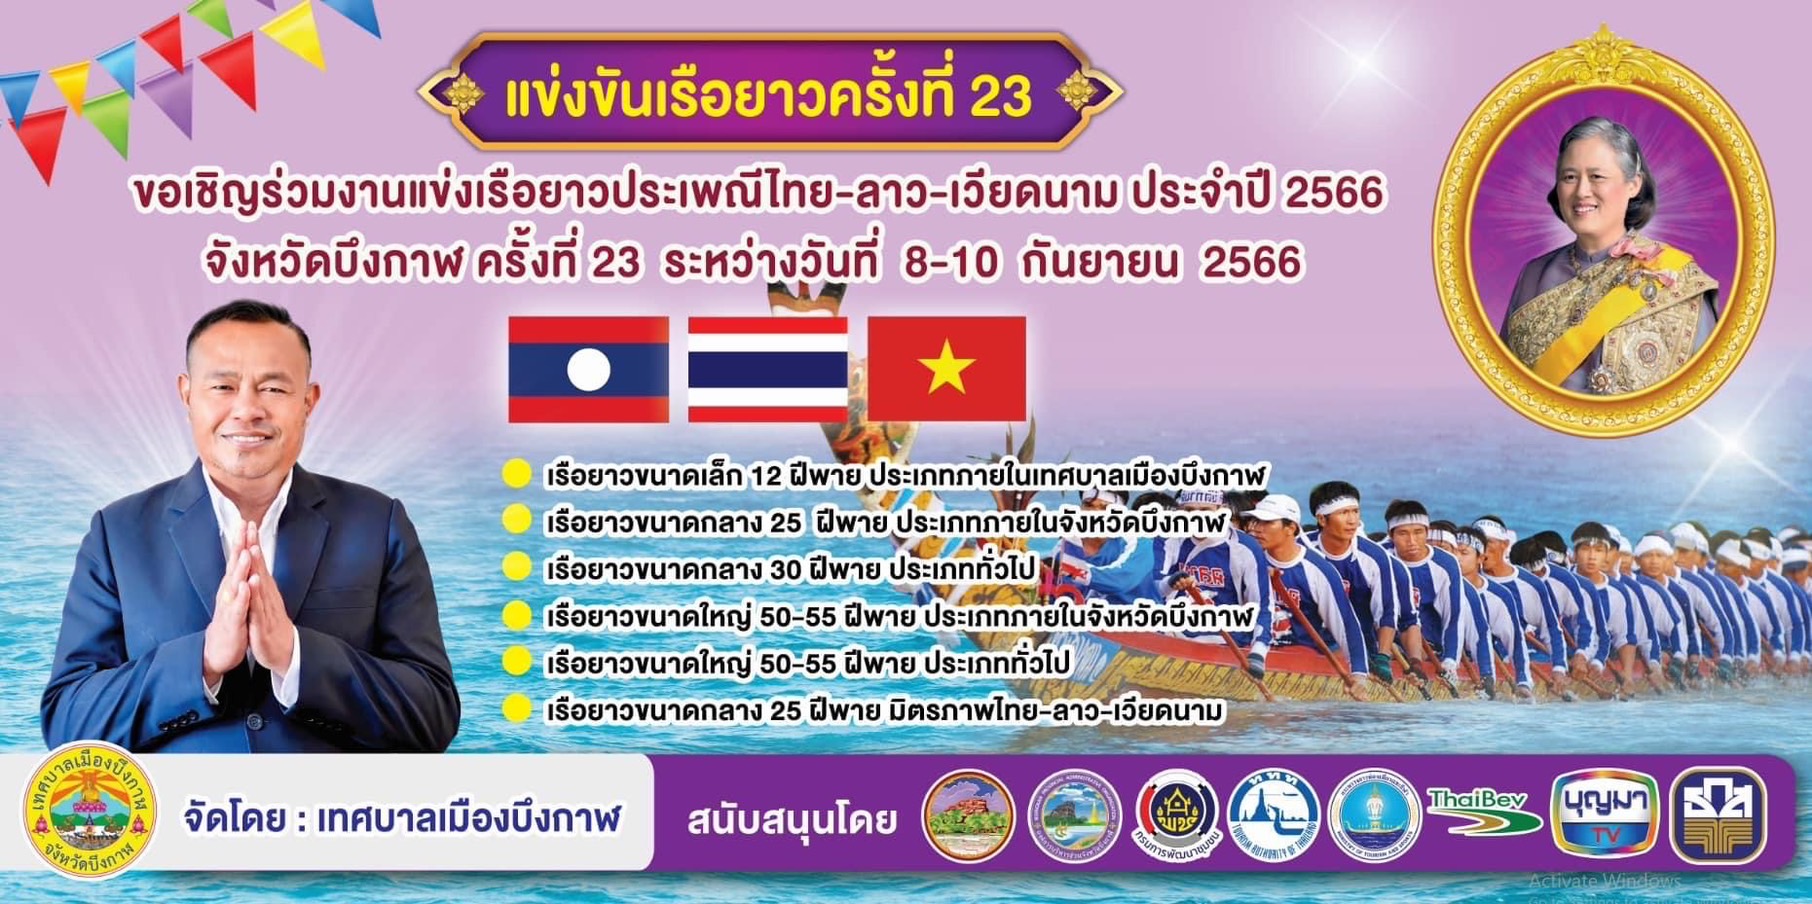 📣 เน้นย้ำกันอีกครั้ง งานแข่งเรือยาวประเพณีไทย – ลาว เวียดนาม 🇱🇦🇹🇭🇻🇳 ชิงถ้วยพระราชทาน🏆สมเด็จพระกนิษฐาธิราชเจ้า กรมสมเด็จพระเทพรัตนราชสุดาฯ สยามบรมราชกุมารี ครั้งที่ 23 ประจำปี 2566 📣